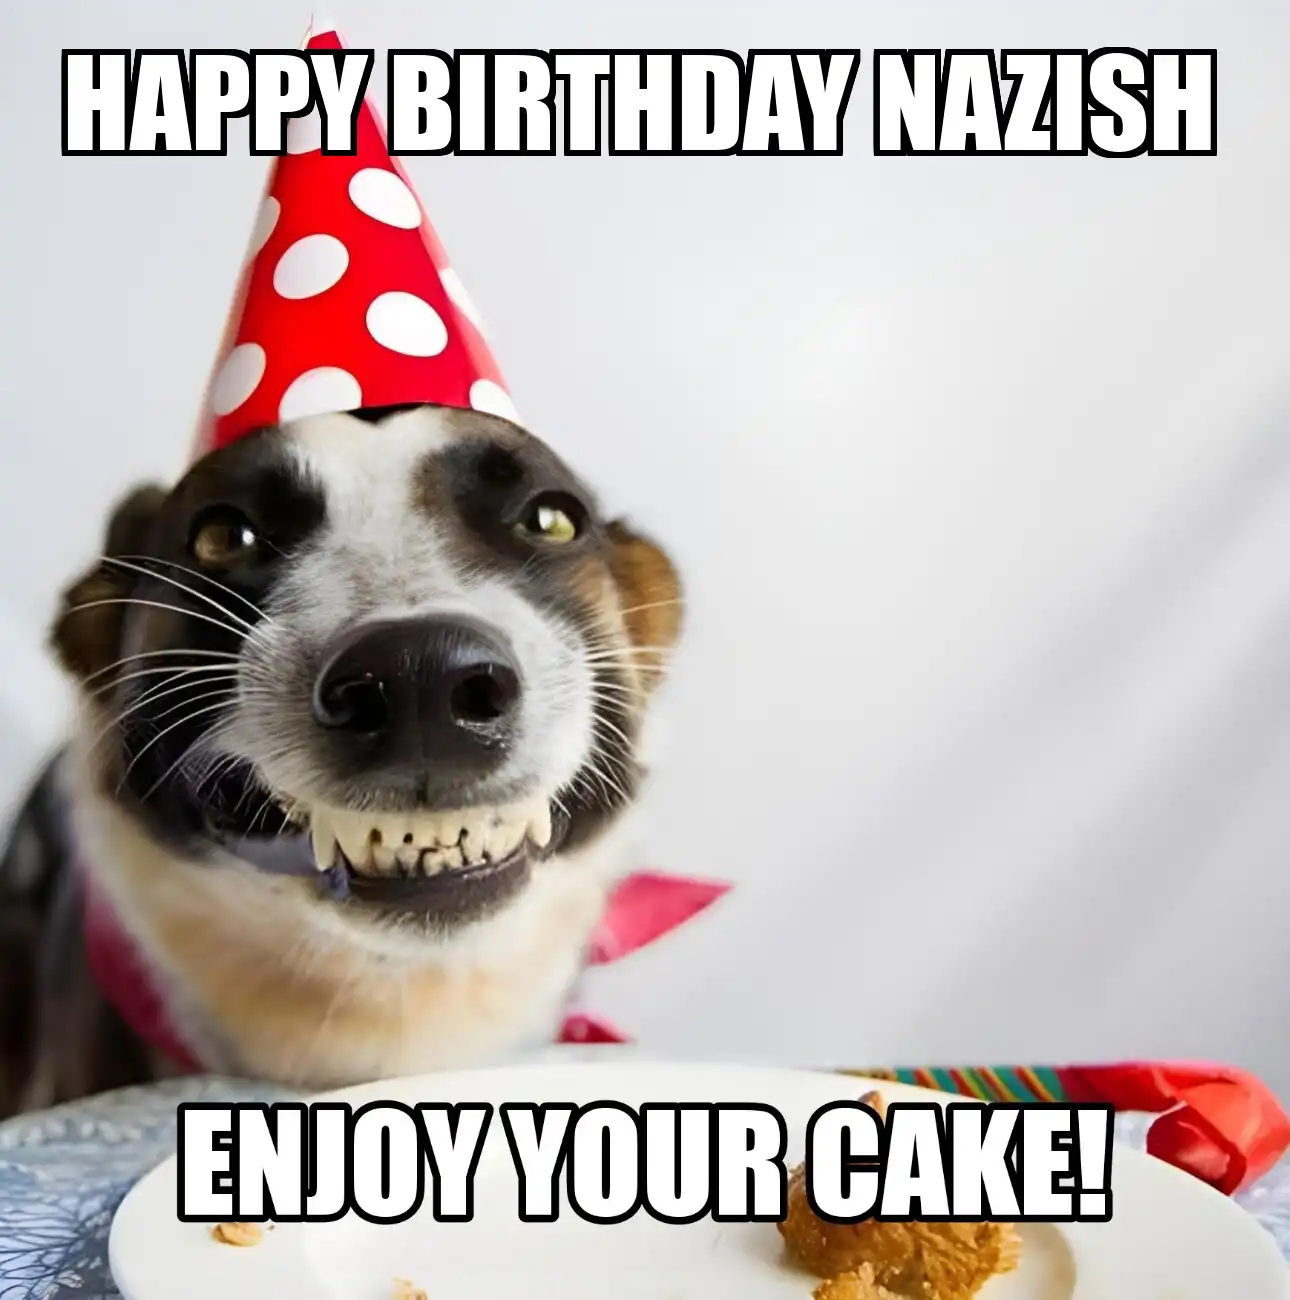 Happy Birthday Nazish Enjoy Your Cake Dog Meme